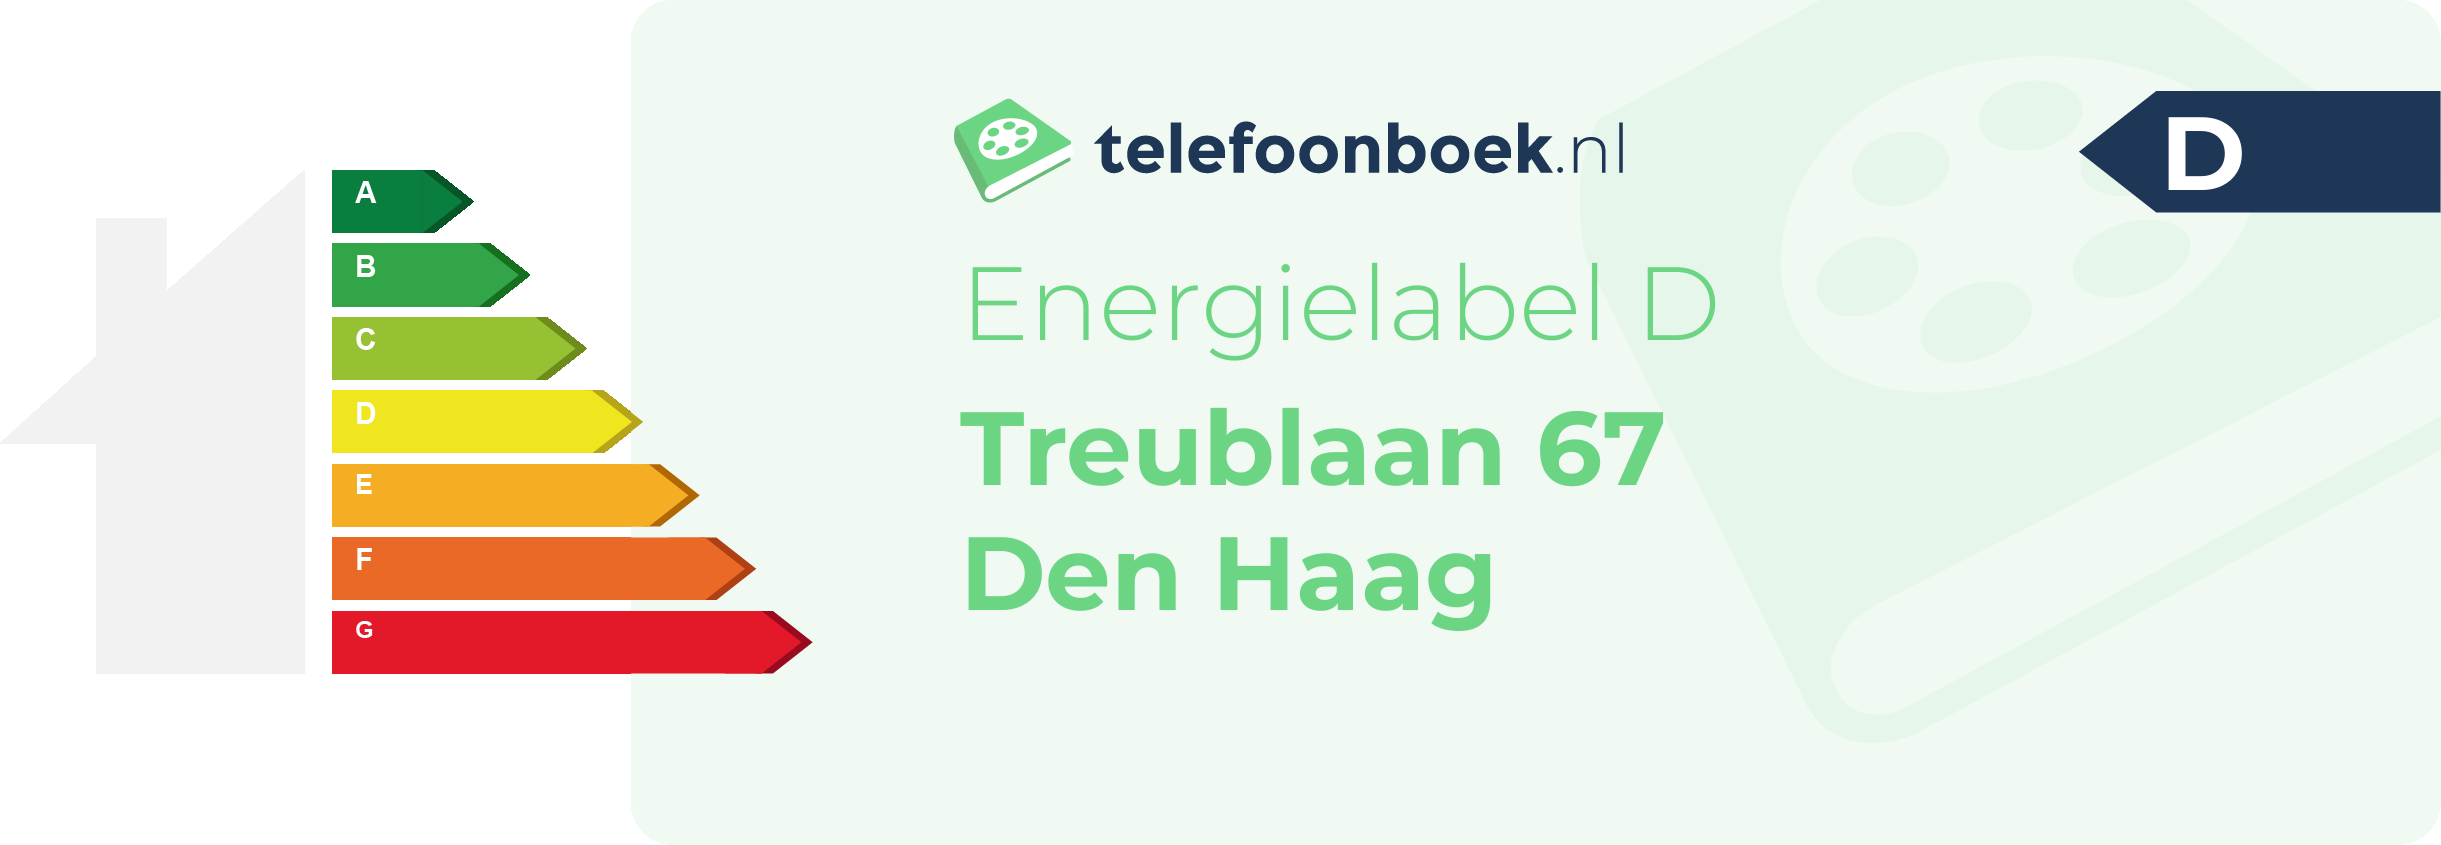 Energielabel Treublaan 67 Den Haag